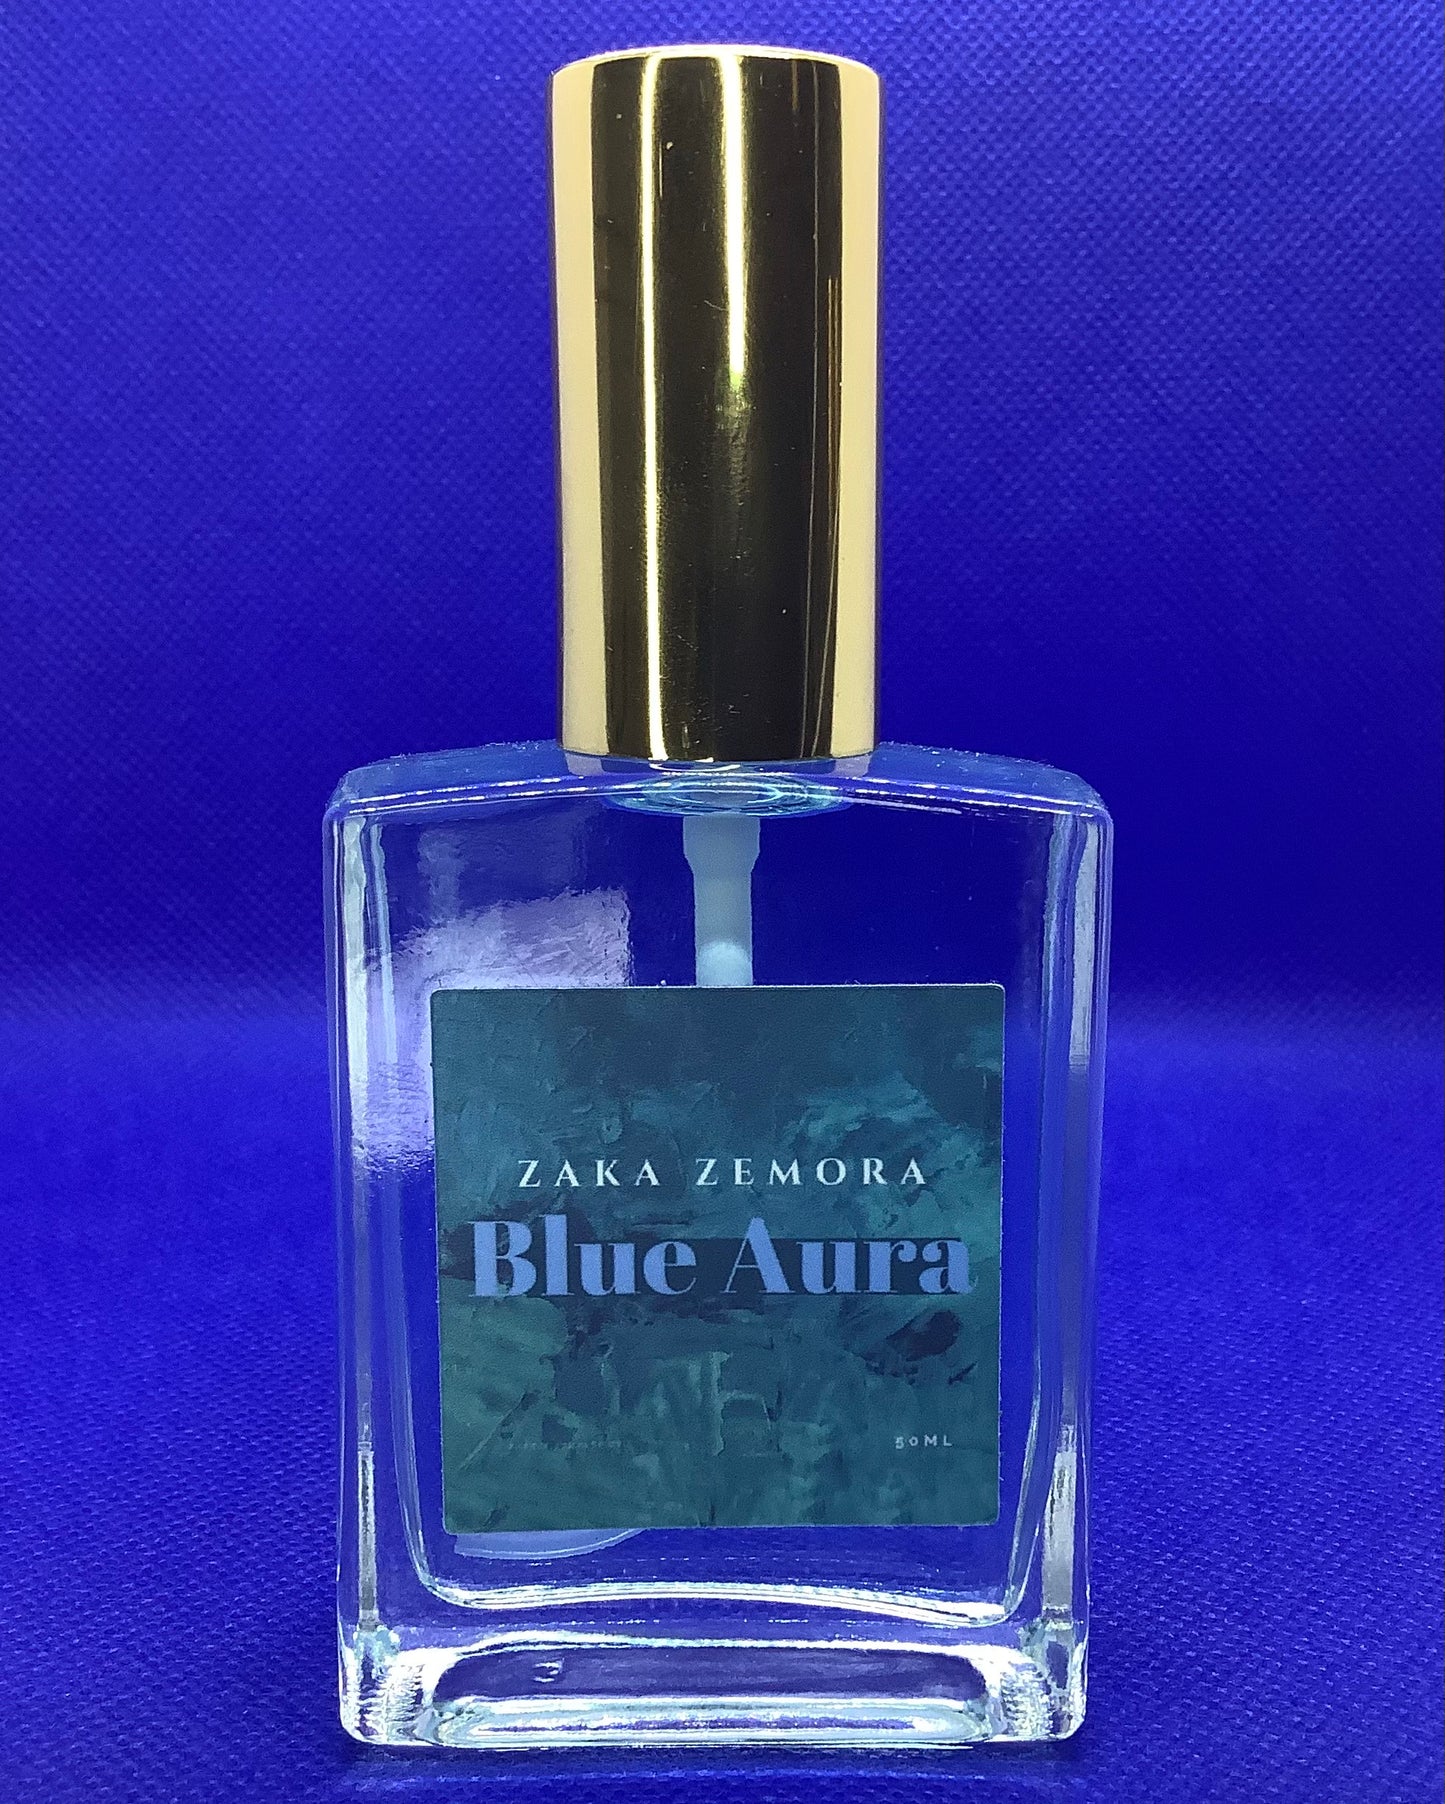 BLUE AURA 50mL Perfume